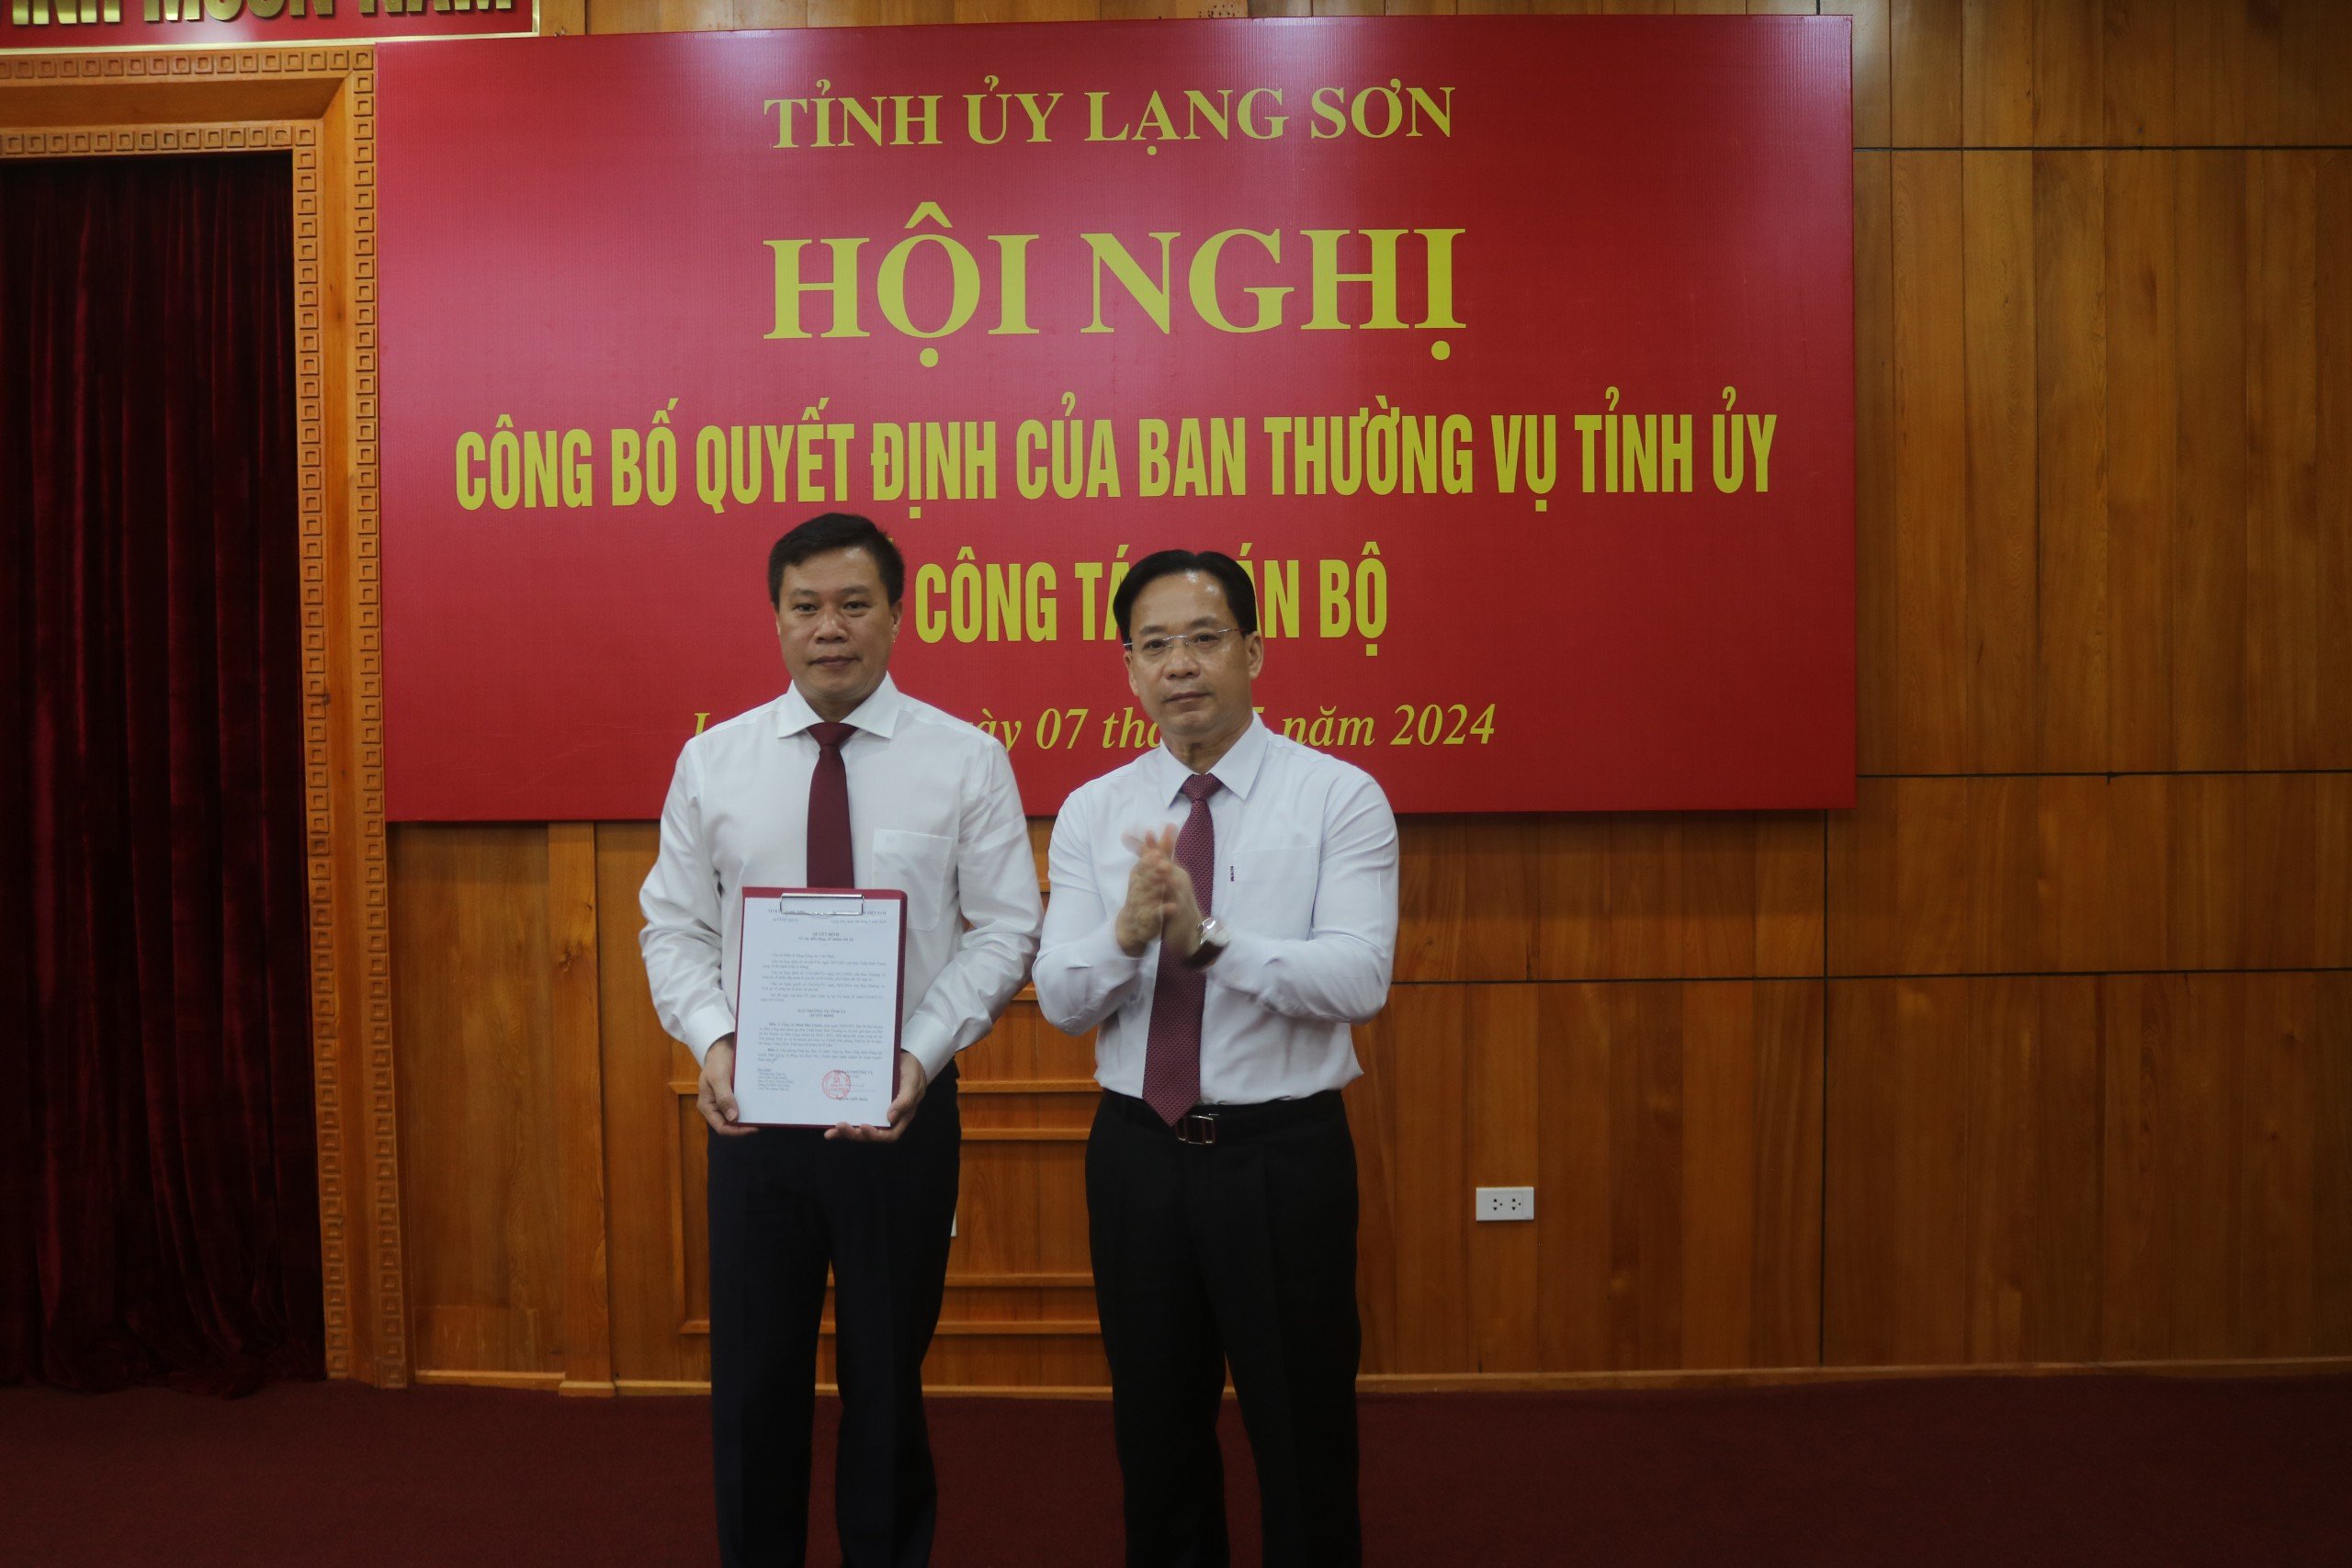 Chân dung Chánh văn phòng Tỉnh ủy Lạng Sơn vừa được bổ nhiệm- Ảnh 1.